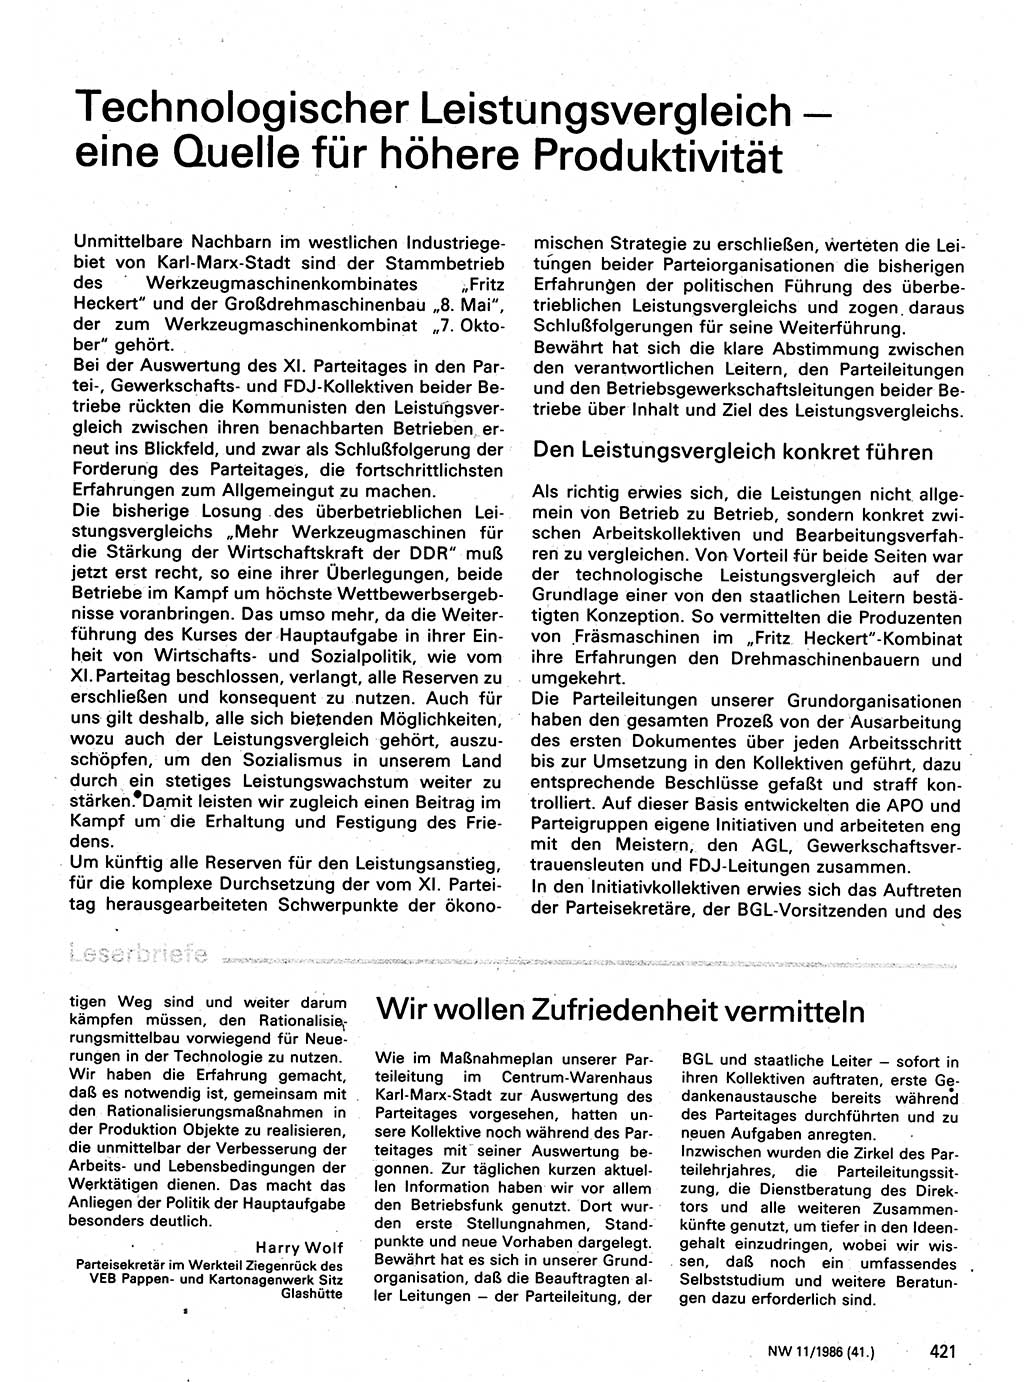 Neuer Weg (NW), Organ des Zentralkomitees (ZK) der SED (Sozialistische Einheitspartei Deutschlands) für Fragen des Parteilebens, 41. Jahrgang [Deutsche Demokratische Republik (DDR)] 1986, Seite 421 (NW ZK SED DDR 1986, S. 421)